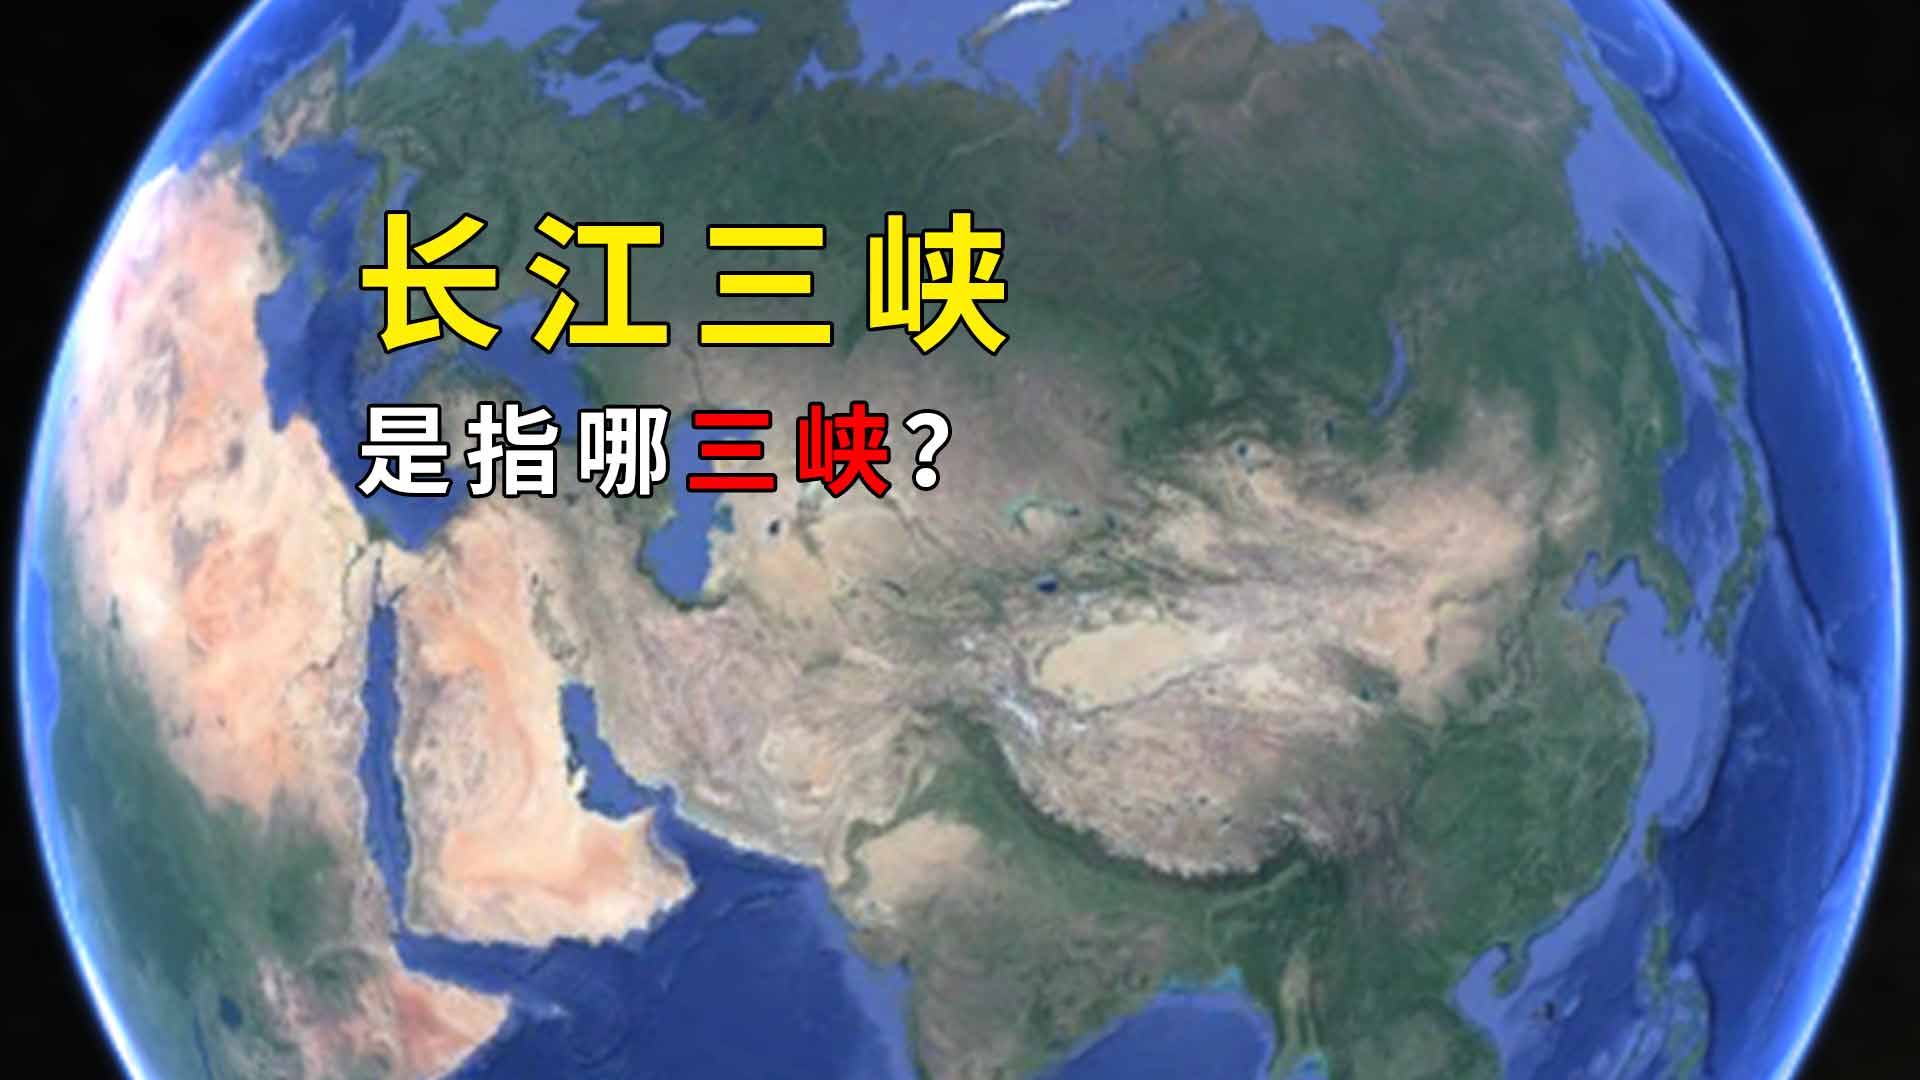 长江三峡是指哪三峡 长江三峡指的是哪三峡